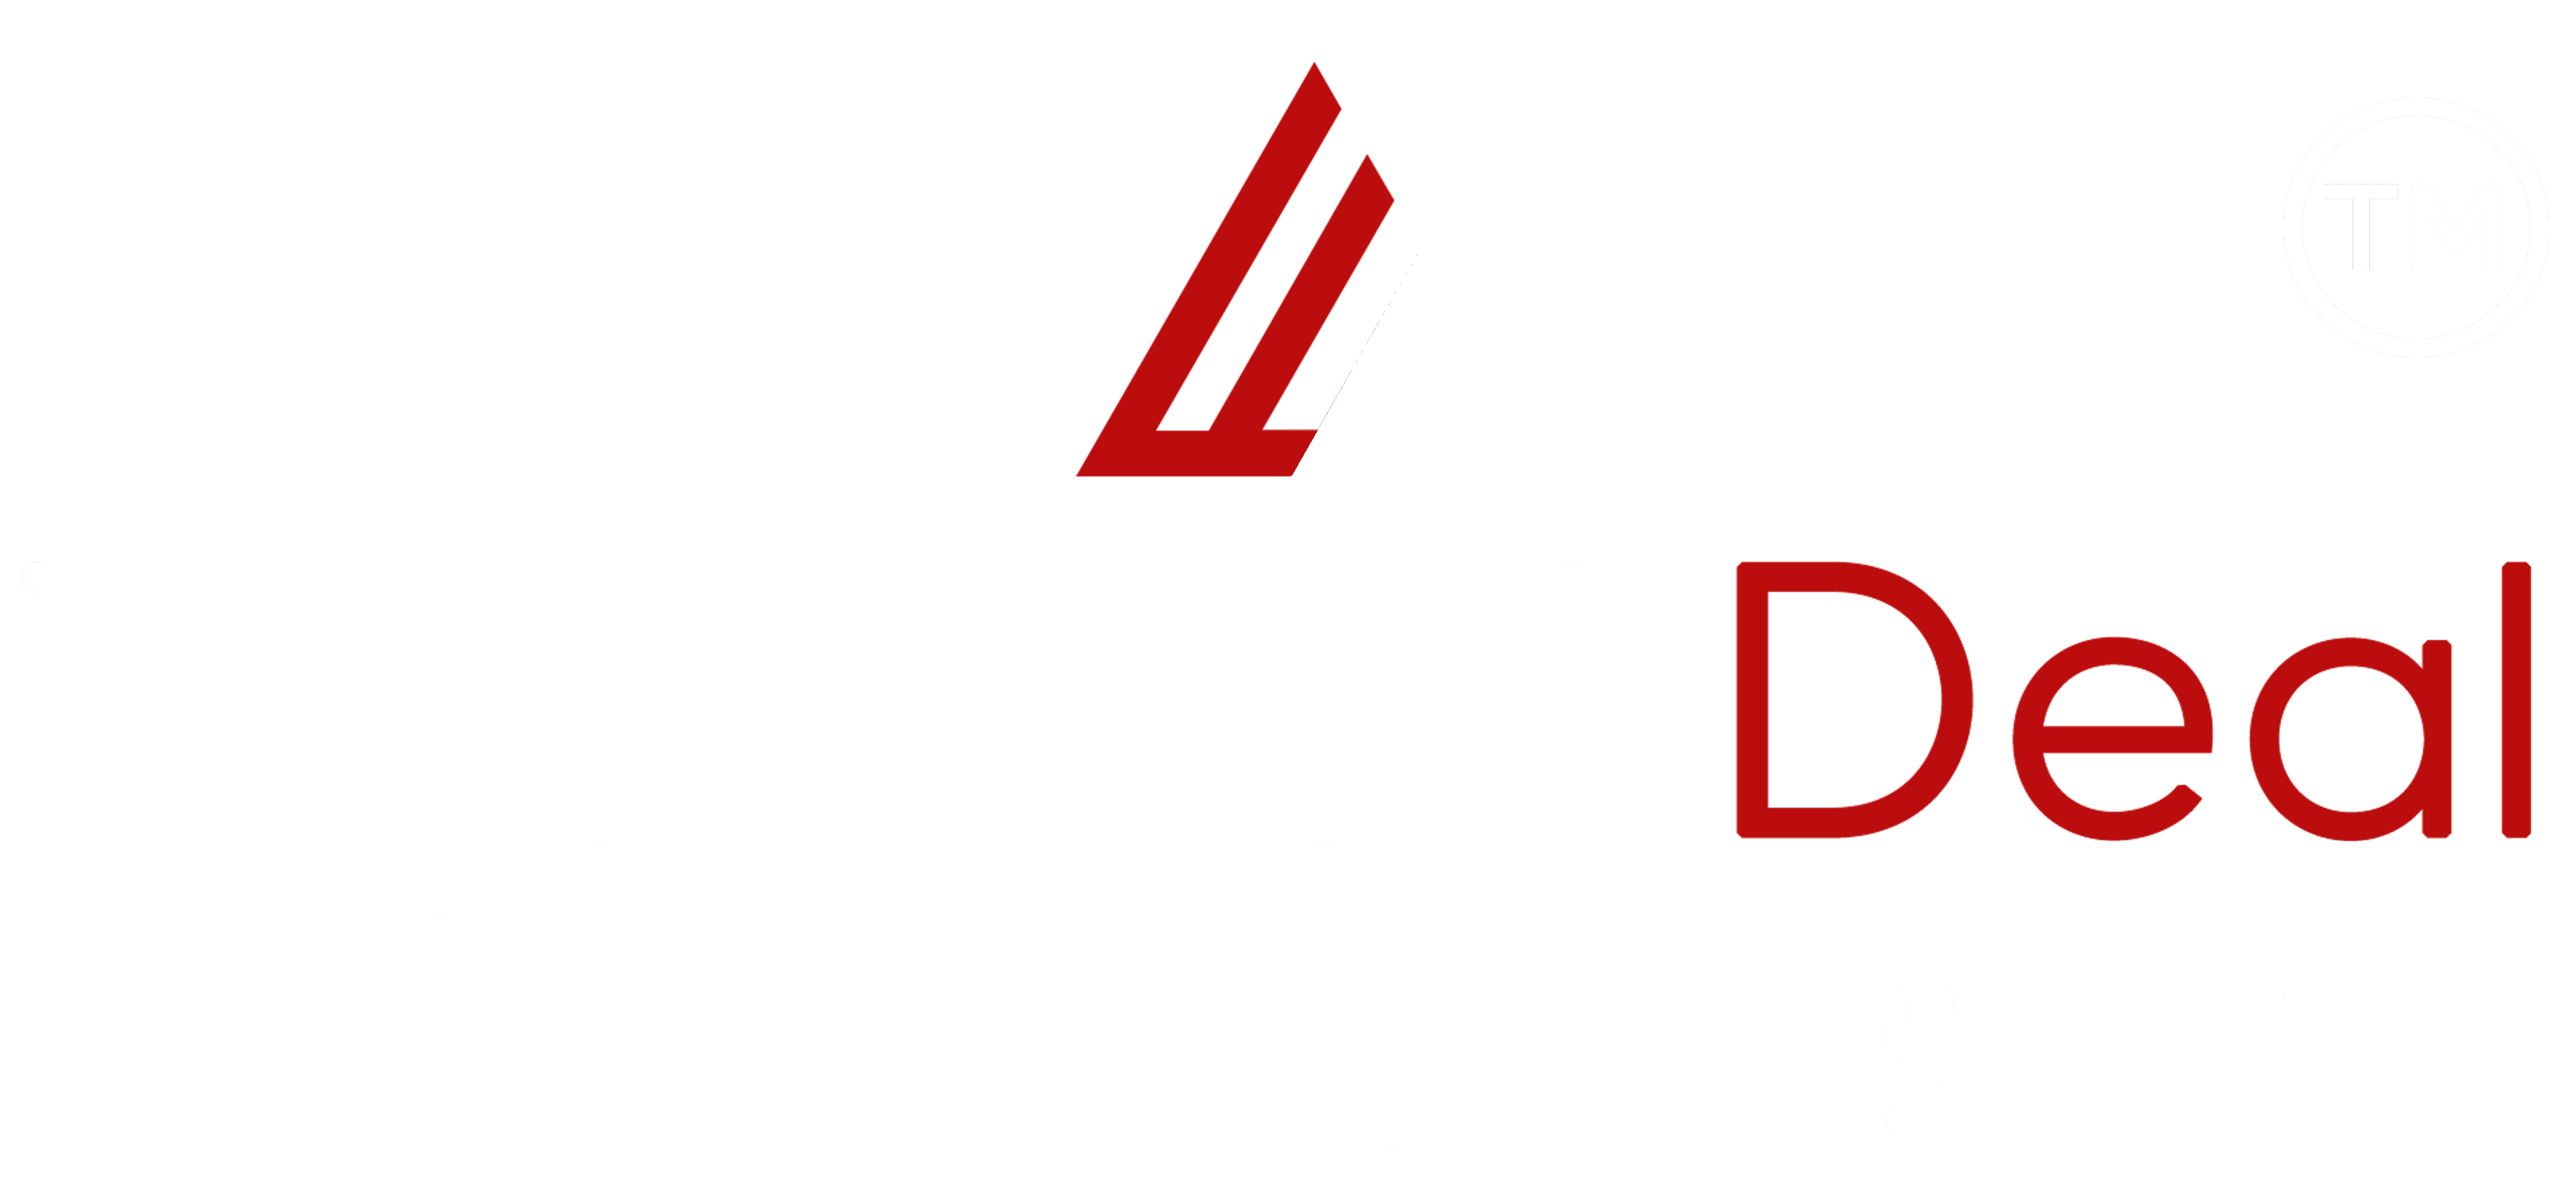 The Walk Deal